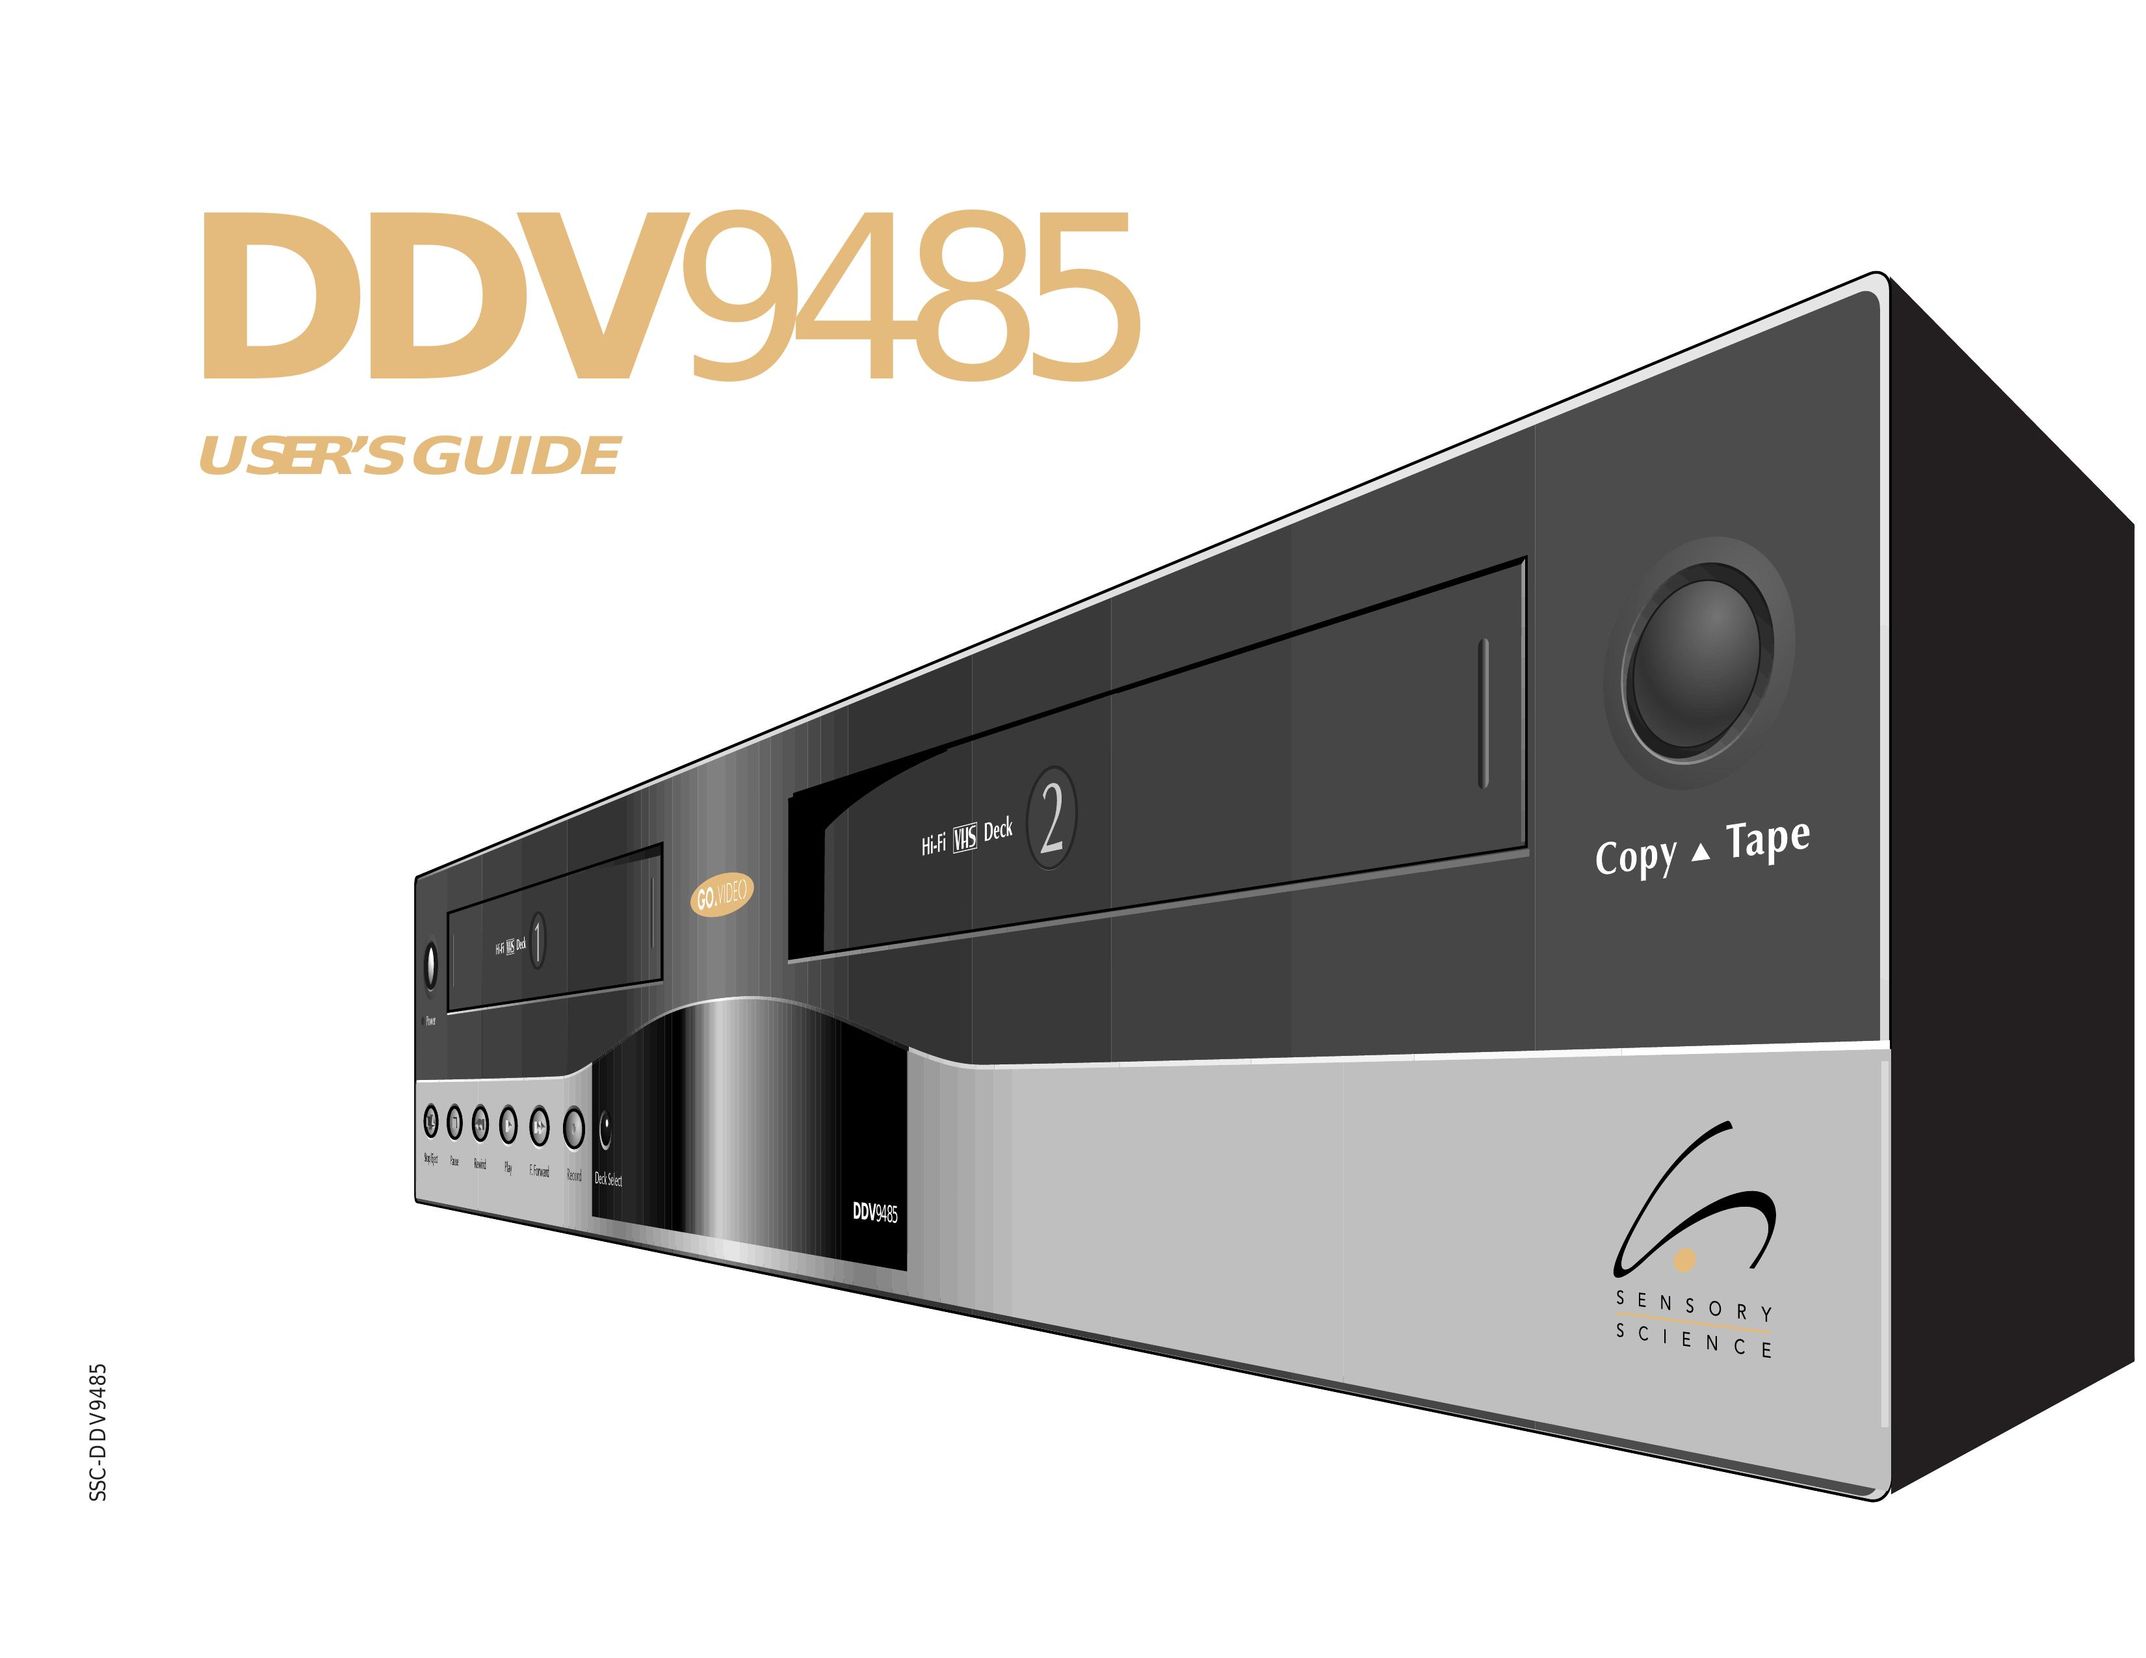 Go-Video DDV9485 VCR User Manual